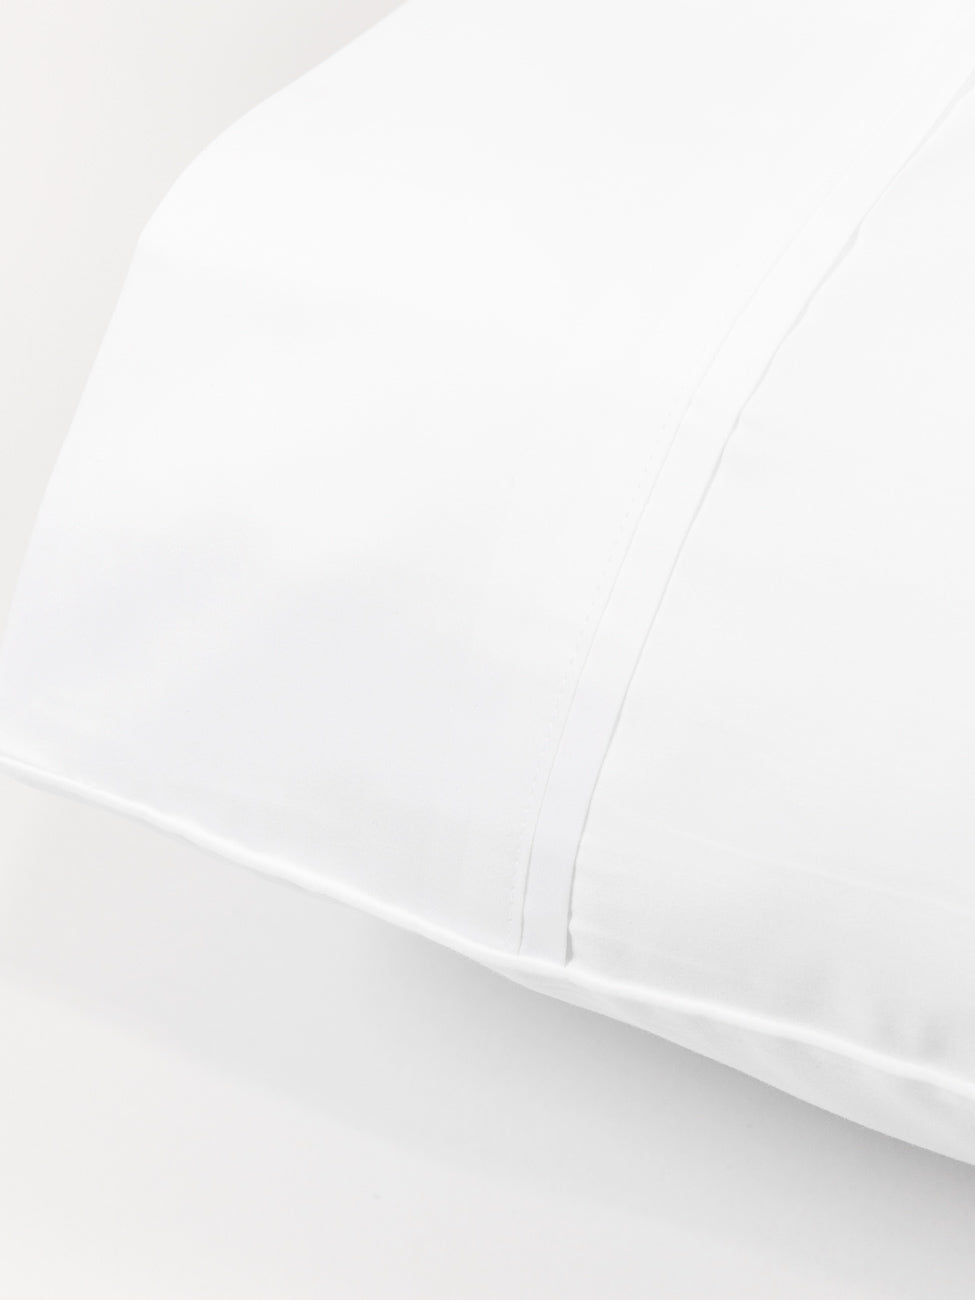 BOVI Estate Bedding Pillowcase Corner White/White Fine Linens